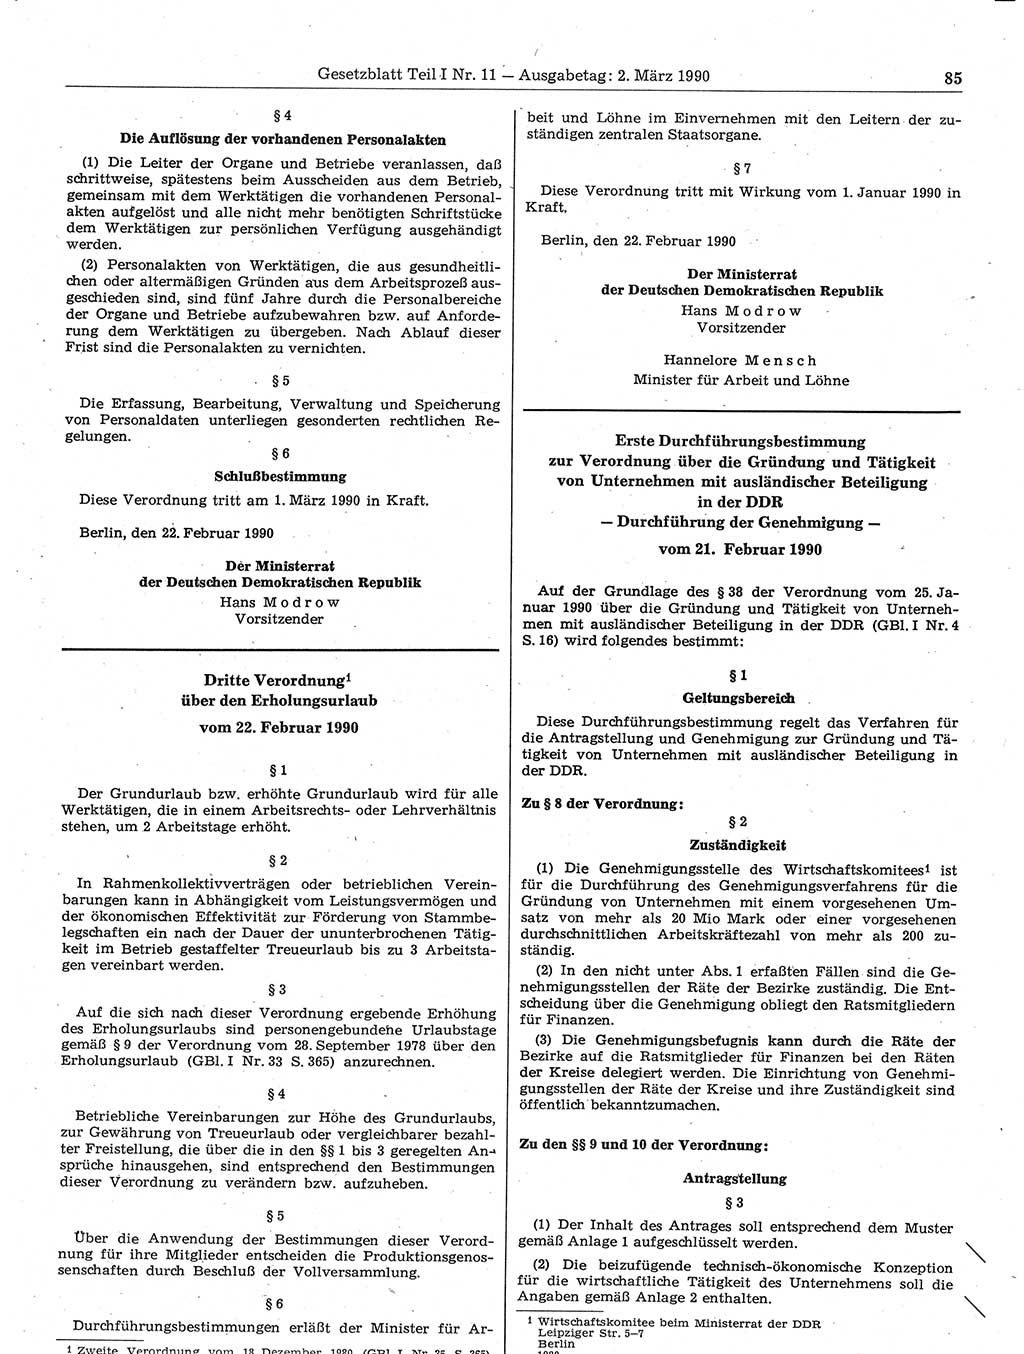 Gesetzblatt (GBl.) der Deutschen Demokratischen Republik (DDR) Teil Ⅰ 1990, Seite 85 (GBl. DDR Ⅰ 1990, S. 85)